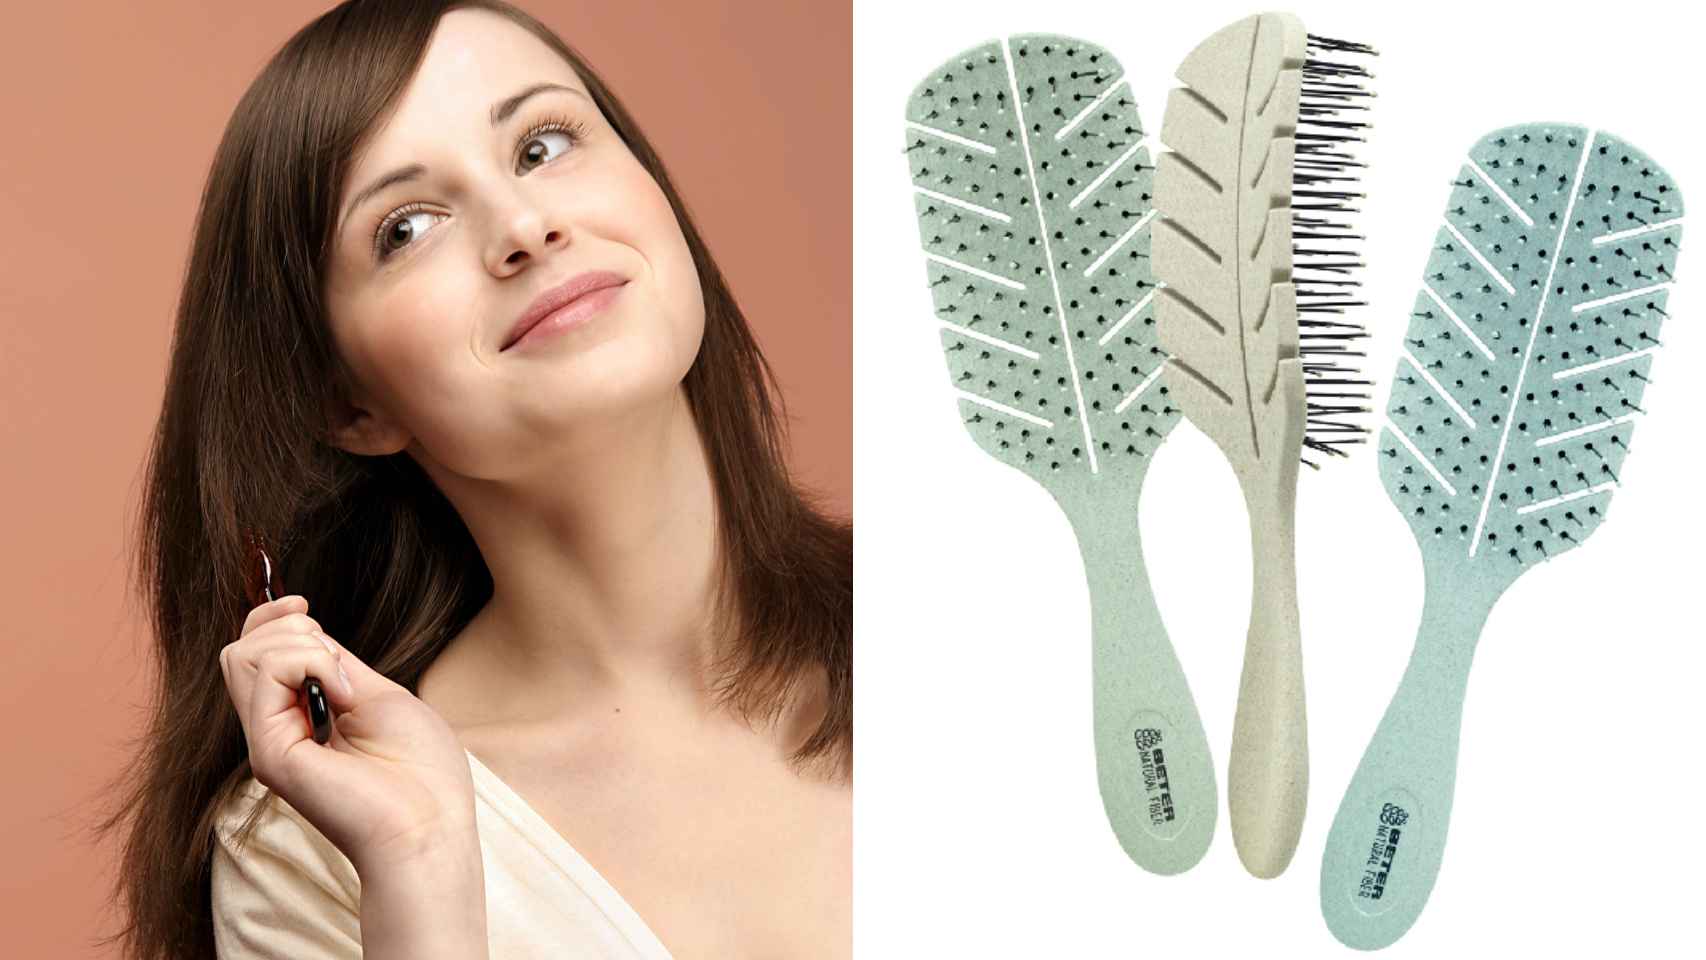 El cepillo que mejor cuida tu cabello existe y cuesta menos de cinco euros